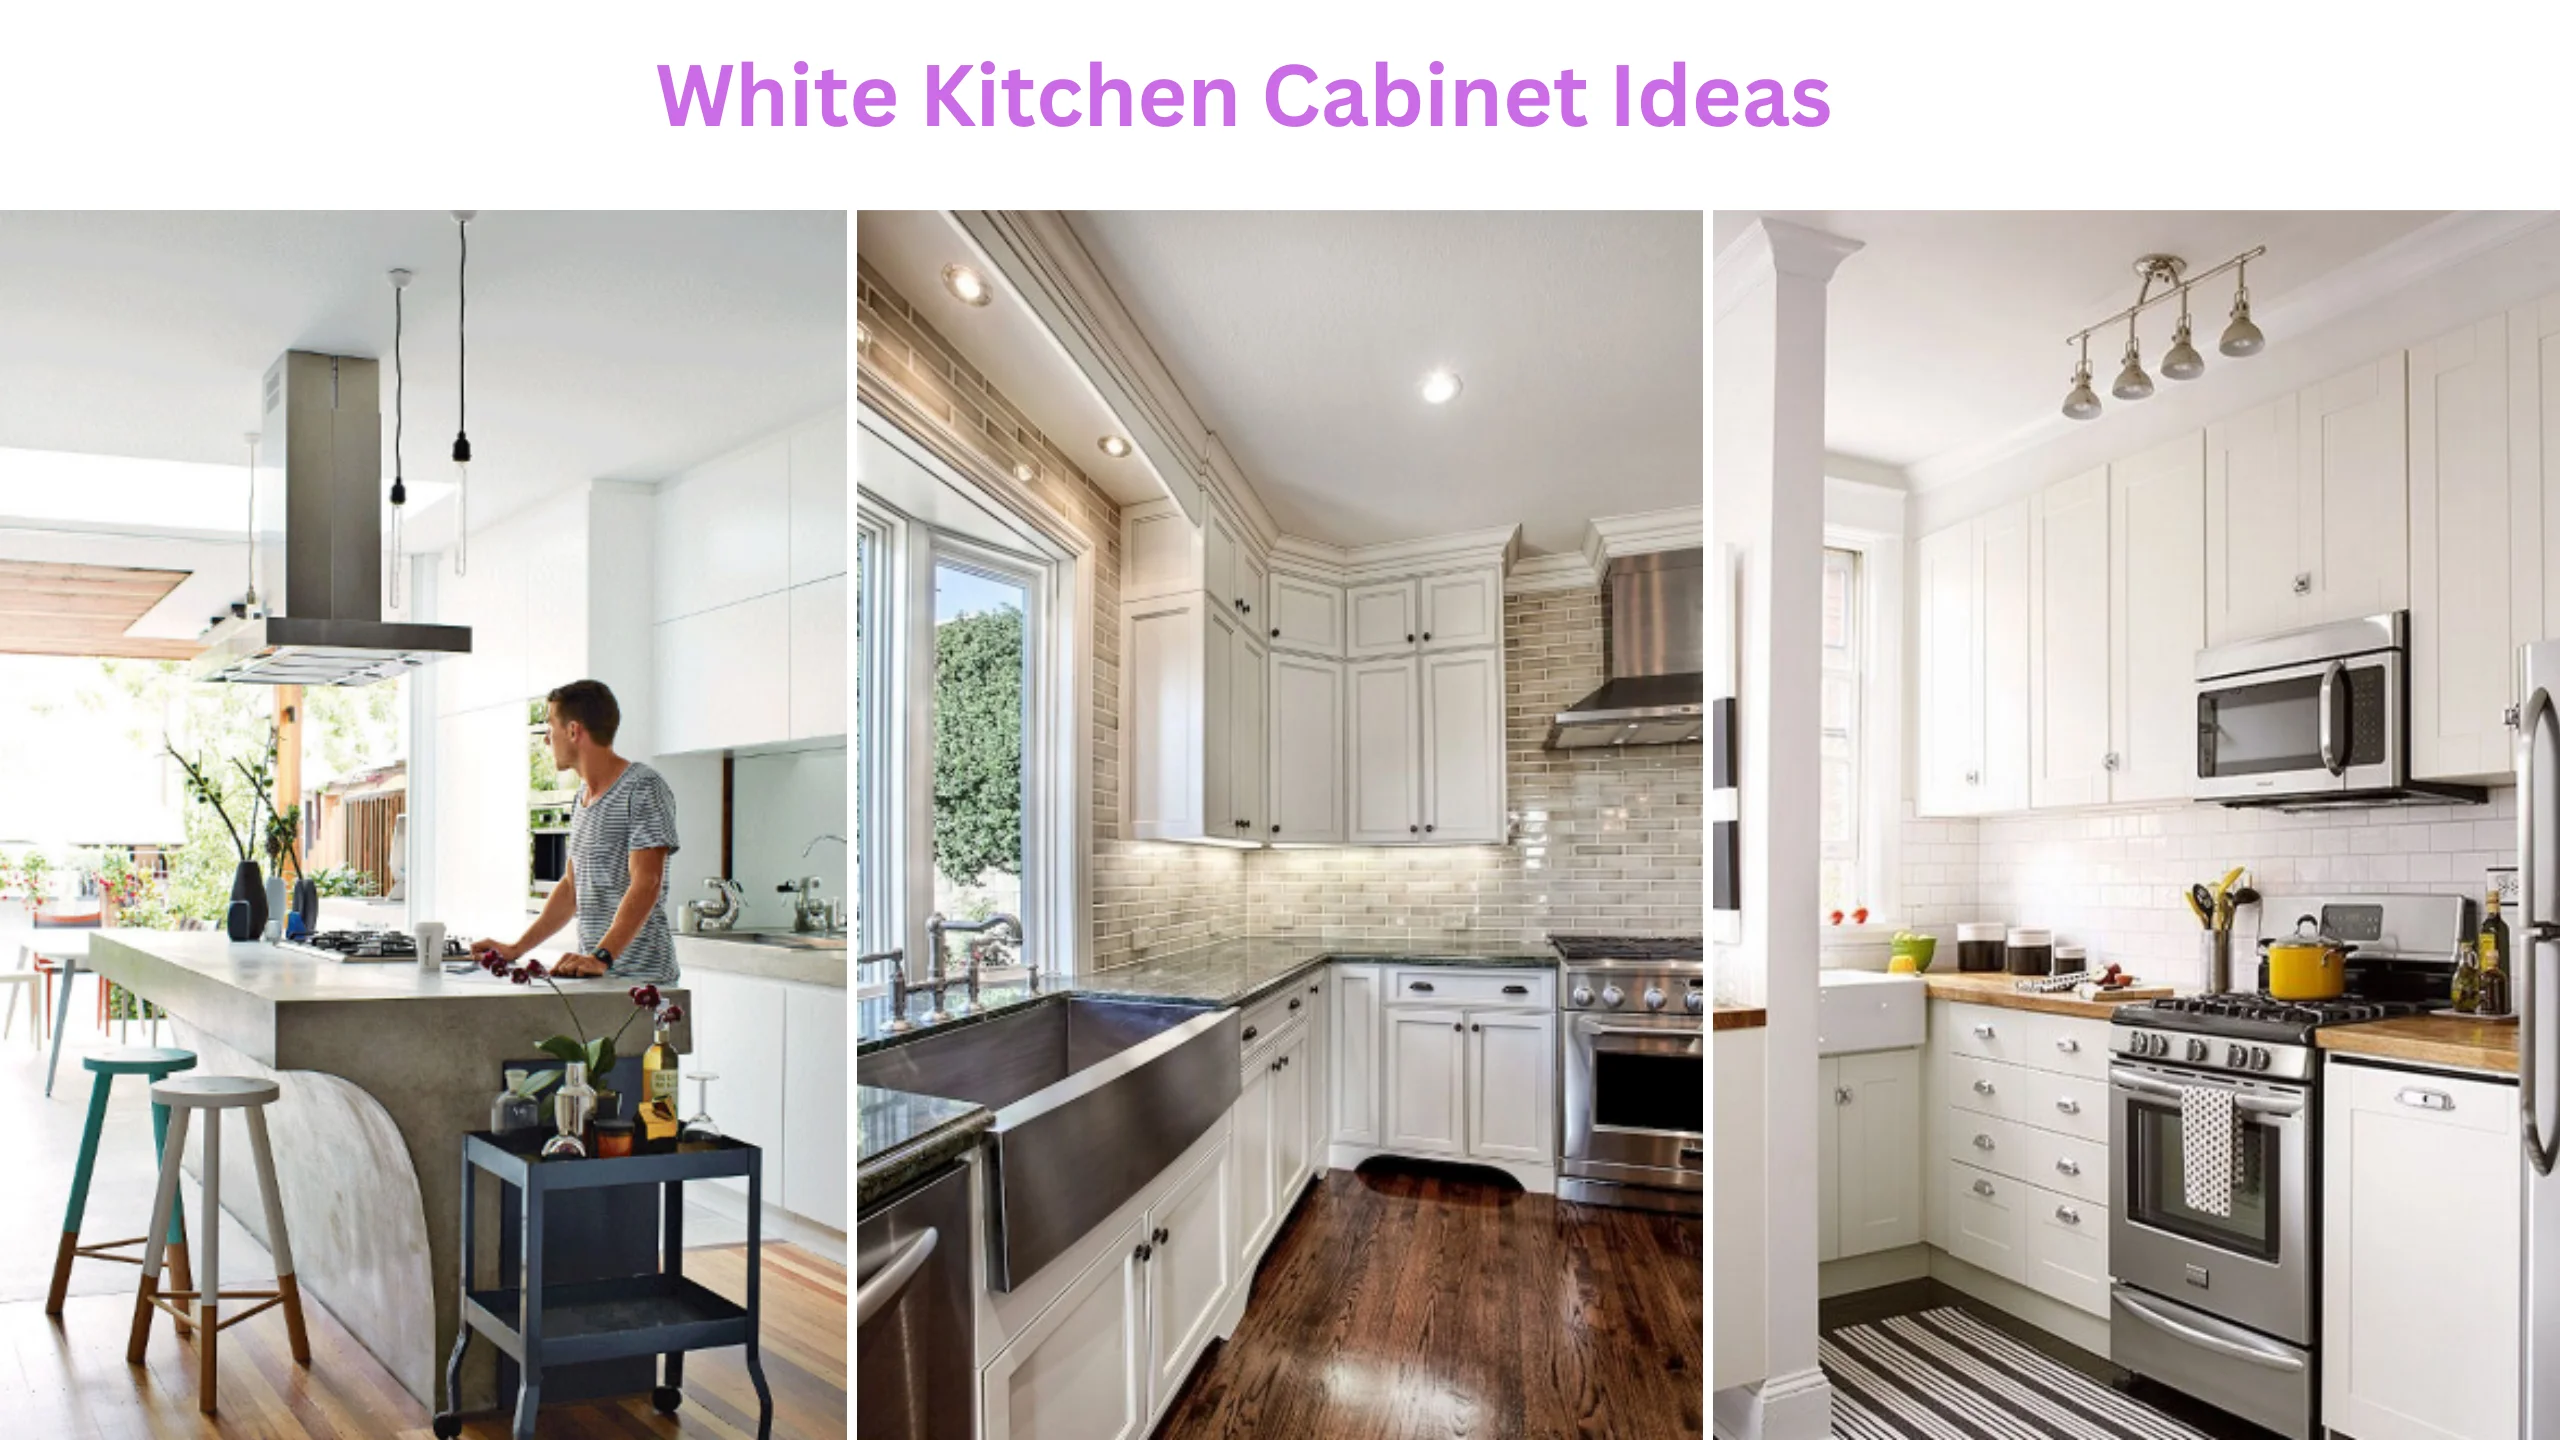 White kitchen cabinet ideas (2)